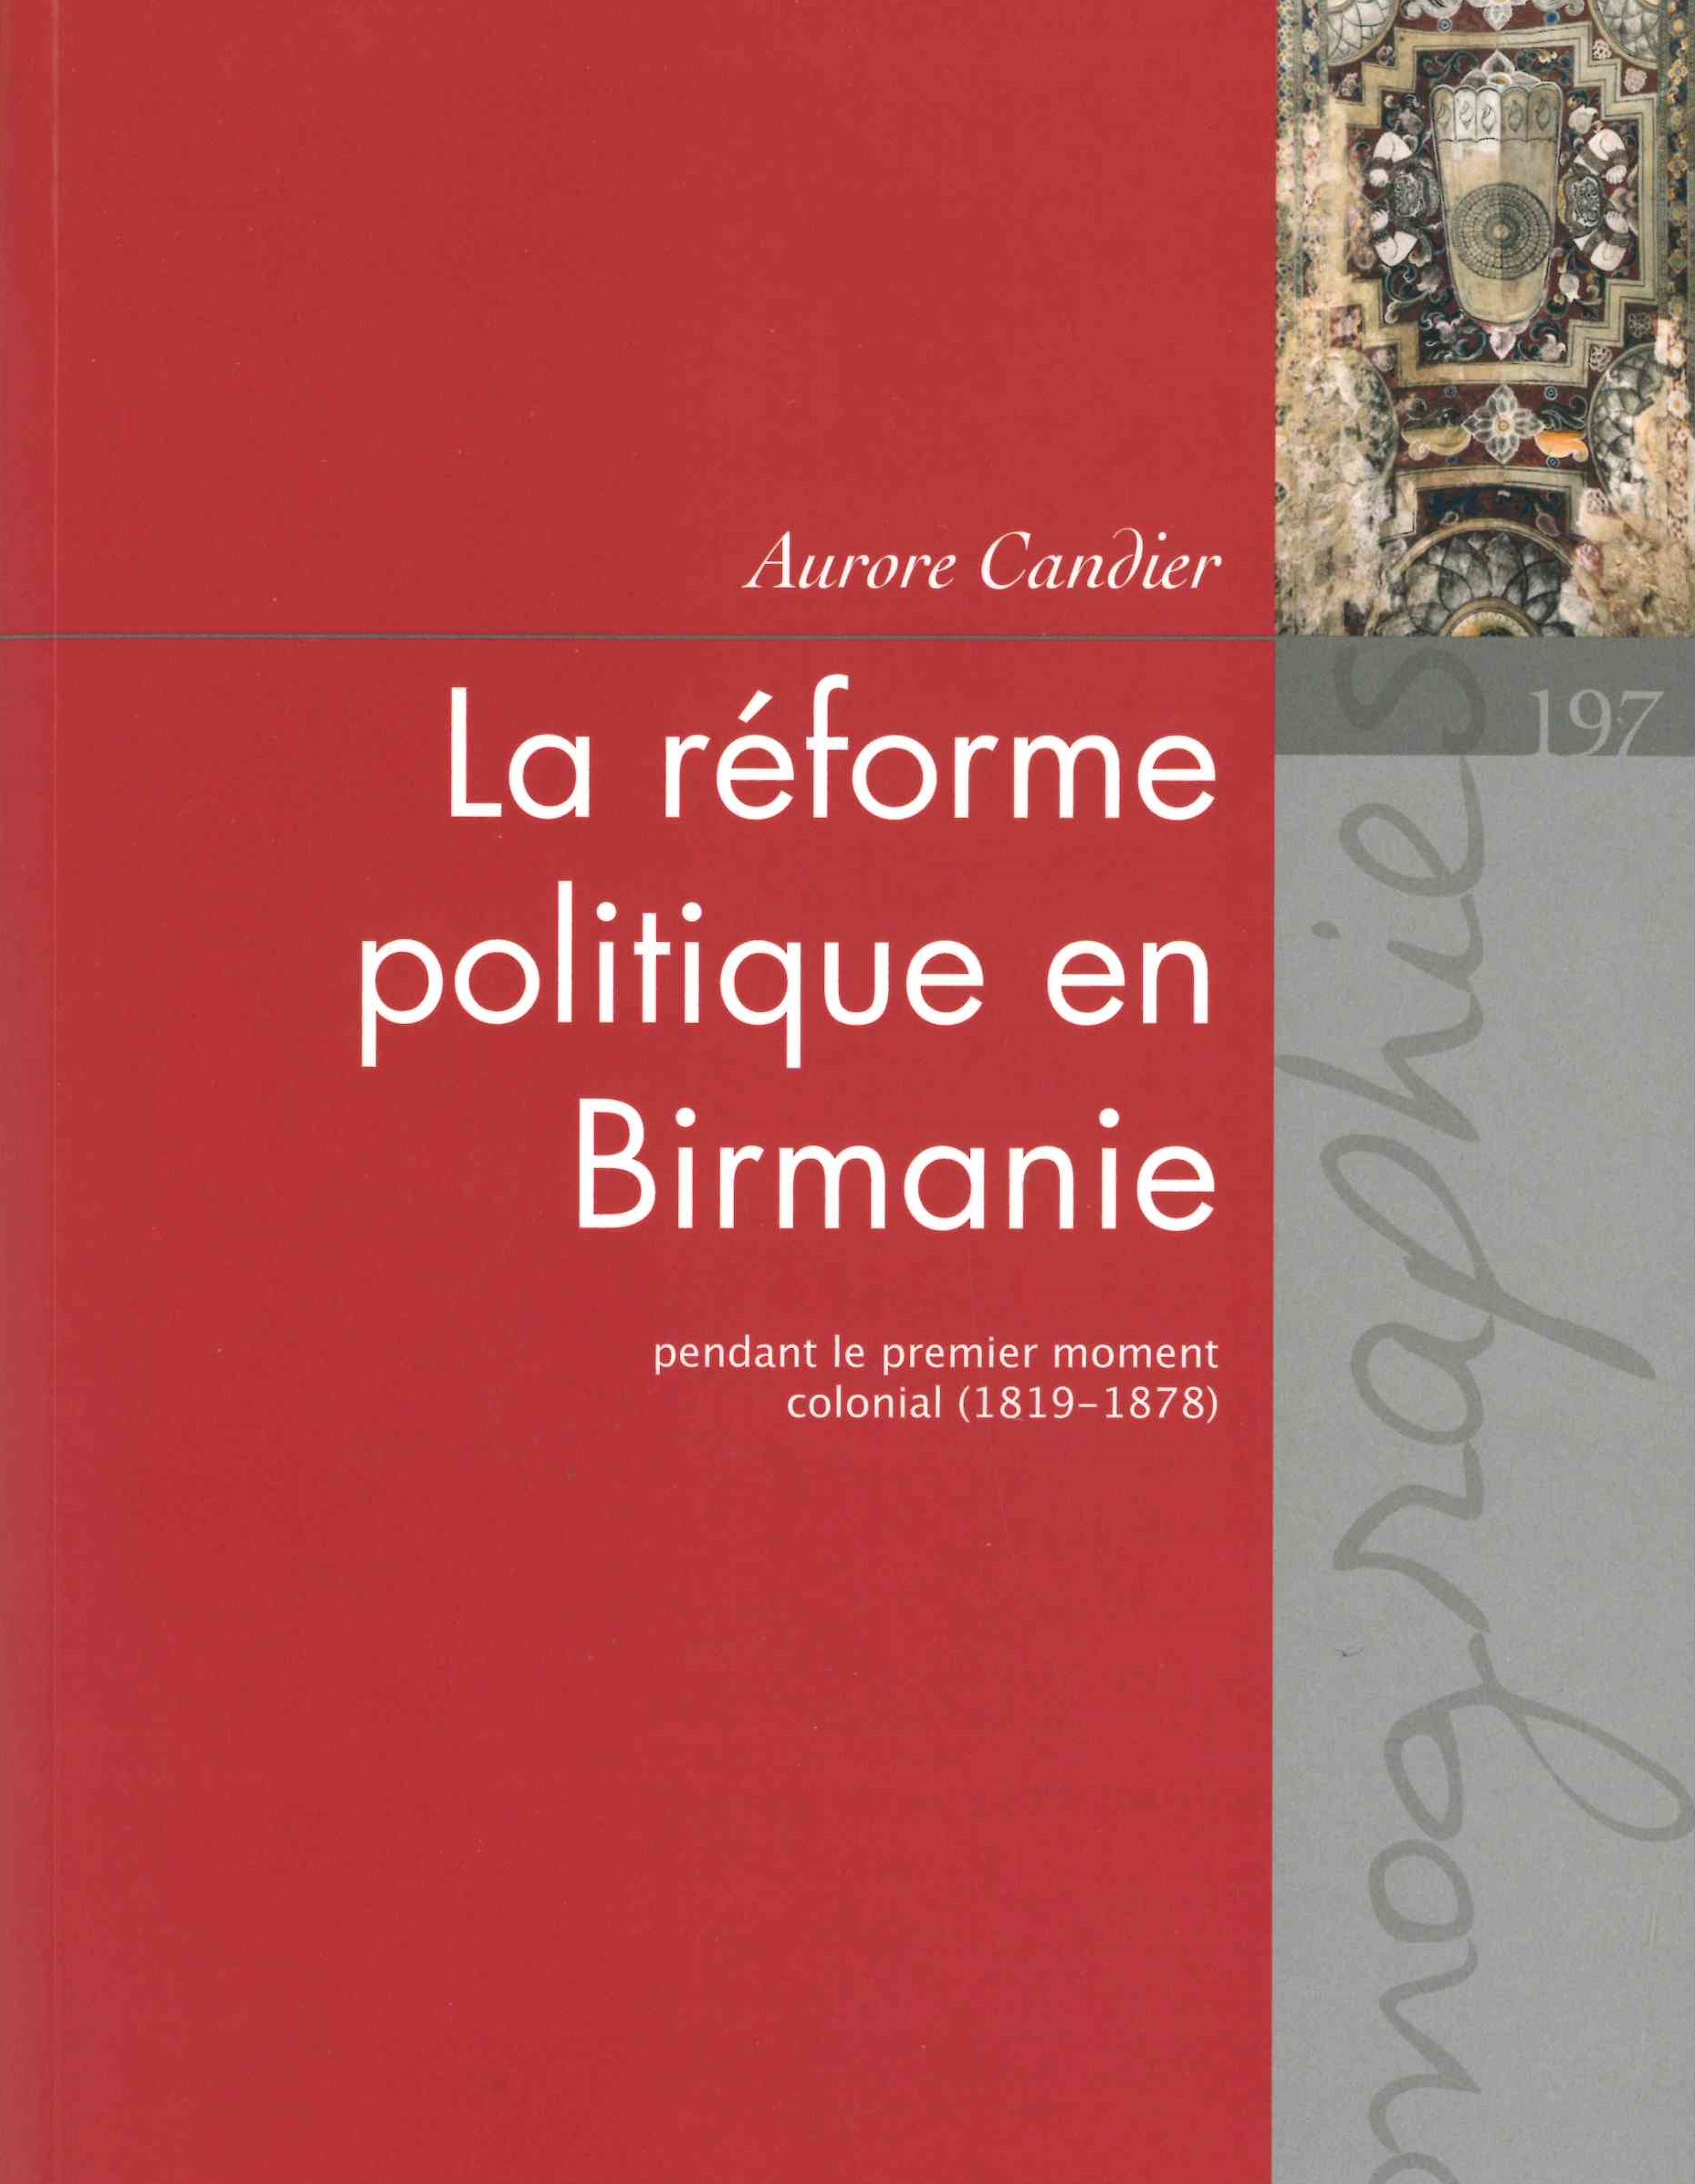 Candier (Aurore), La réforme politique en Birmanie pendant le premier moment colonial (1819-1878)